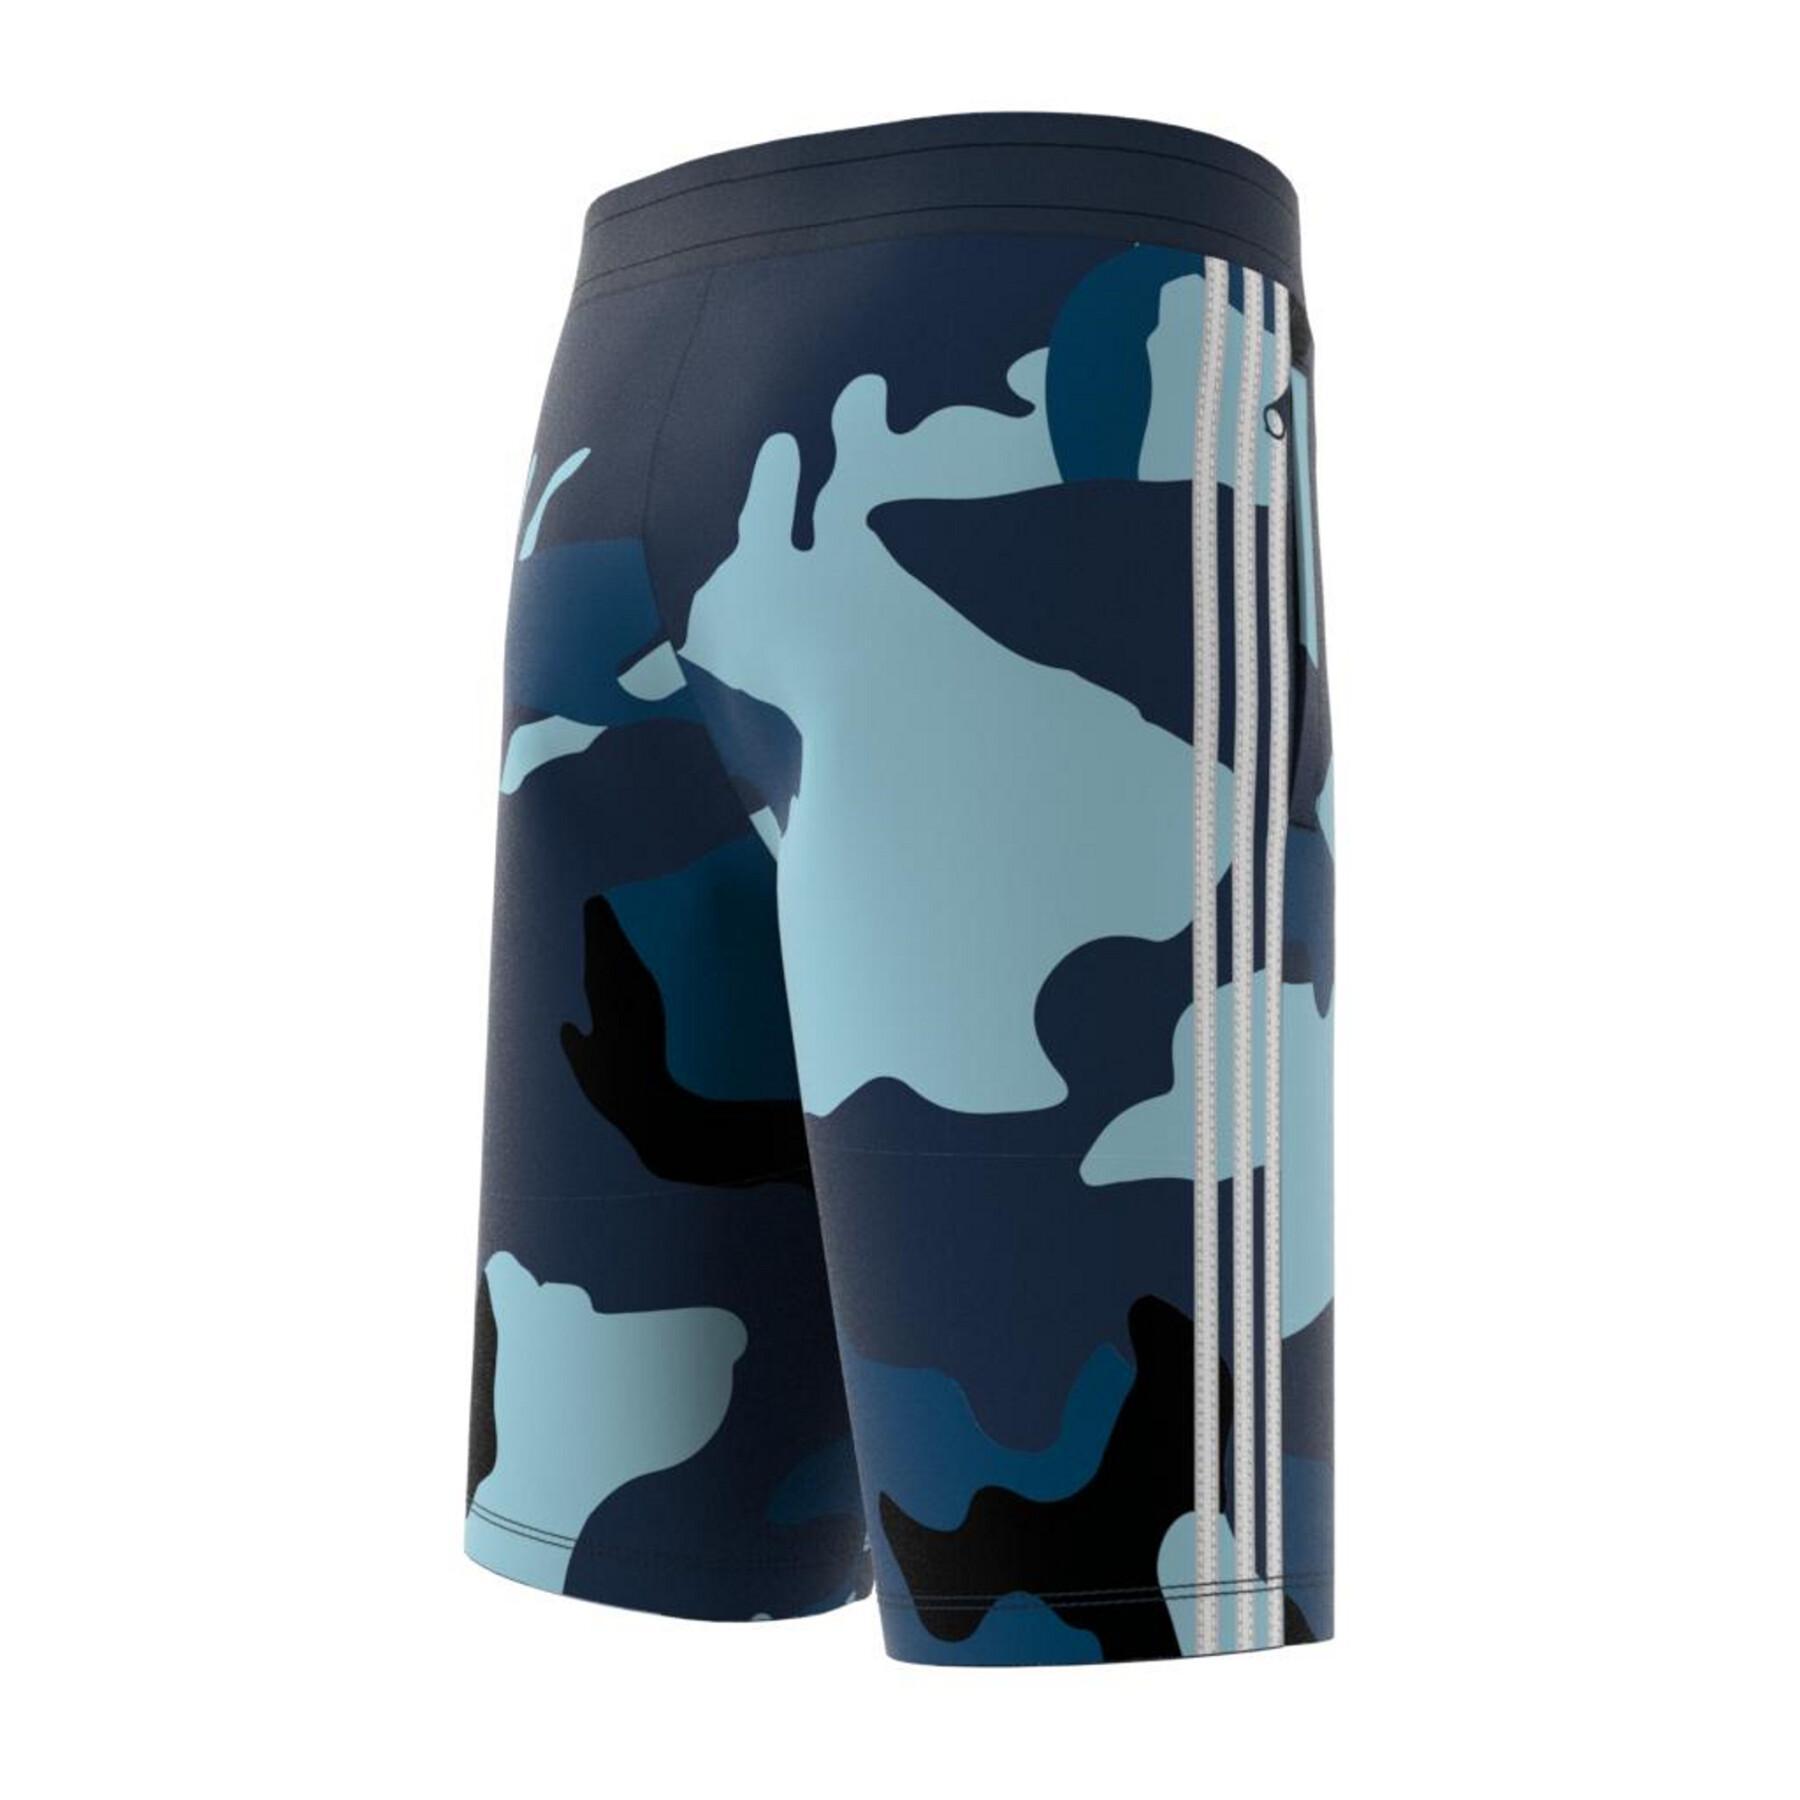 Children's shorts adidas Camouflage